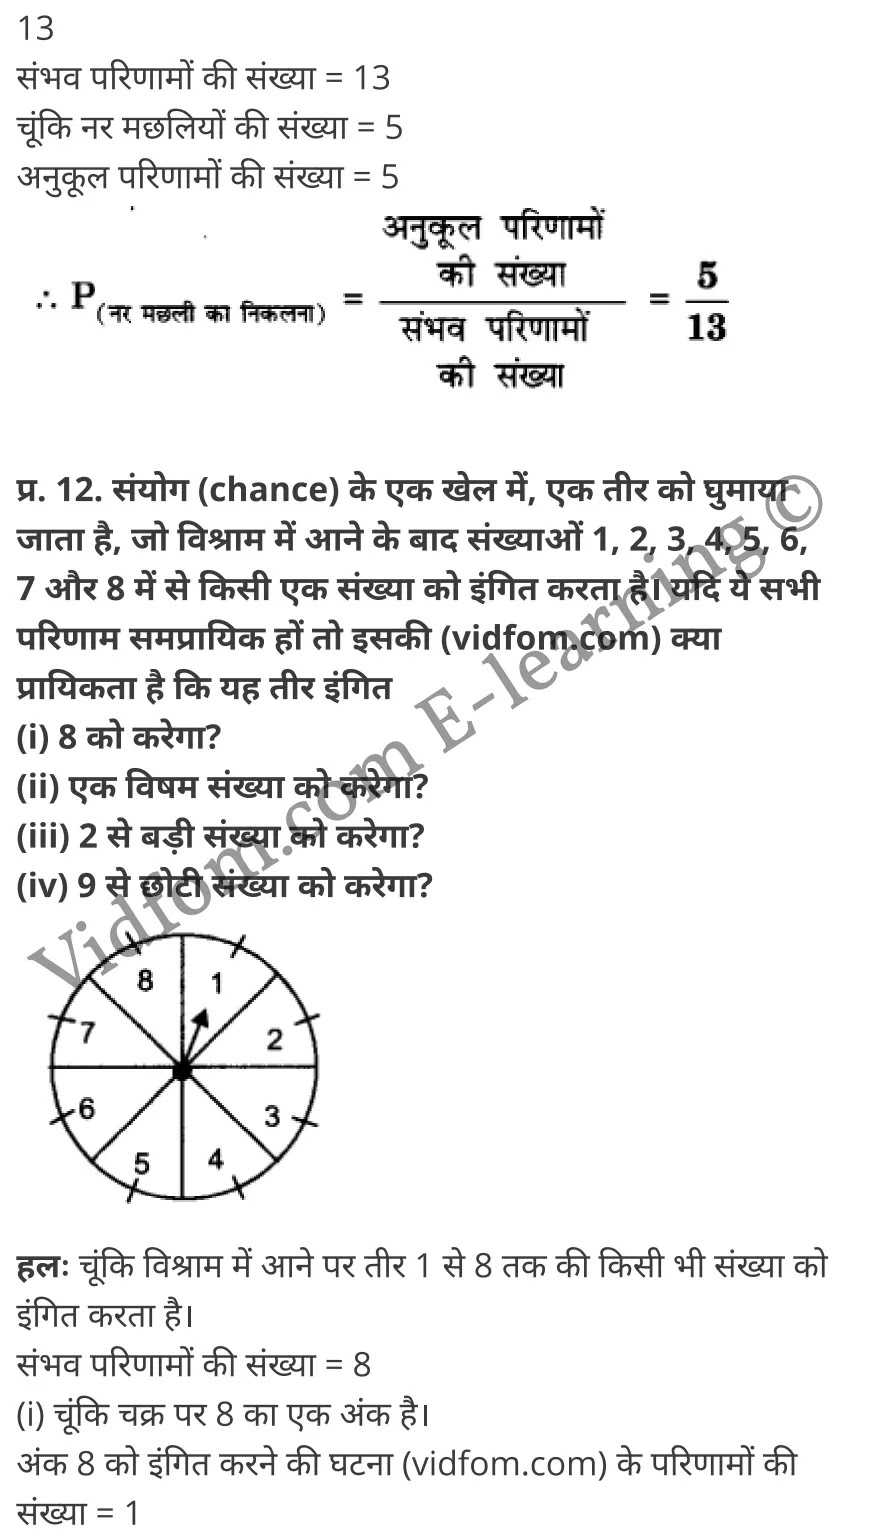 कक्षा 10 गणित  के नोट्स  हिंदी में एनसीईआरटी समाधान,     class 10 Maths chapter 15,   class 10 Maths chapter 15 ncert solutions in Maths,  class 10 Maths chapter 15 notes in hindi,   class 10 Maths chapter 15 question answer,   class 10 Maths chapter 15 notes,   class 10 Maths chapter 15 class 10 Maths  chapter 15 in  hindi,    class 10 Maths chapter 15 important questions in  hindi,   class 10 Maths hindi  chapter 15 notes in hindi,   class 10 Maths  chapter 15 test,   class 10 Maths  chapter 15 class 10 Maths  chapter 15 pdf,   class 10 Maths  chapter 15 notes pdf,   class 10 Maths  chapter 15 exercise solutions,  class 10 Maths  chapter 15,  class 10 Maths  chapter 15 notes study rankers,  class 10 Maths  chapter 15 notes,   class 10 Maths hindi  chapter 15 notes,    class 10 Maths   chapter 15  class 10  notes pdf,  class 10 Maths  chapter 15 class 10  notes  ncert,  class 10 Maths  chapter 15 class 10 pdf,   class 10 Maths  chapter 15  book,   class 10 Maths  chapter 15 quiz class 10  ,    10  th class 10 Maths chapter 15  book up board,   up board 10  th class 10 Maths chapter 15 notes,  class 10 Maths,   class 10 Maths ncert solutions in Maths,   class 10 Maths notes in hindi,   class 10 Maths question answer,   class 10 Maths notes,  class 10 Maths class 10 Maths  chapter 15 in  hindi,    class 10 Maths important questions in  hindi,   class 10 Maths notes in hindi,    class 10 Maths test,  class 10 Maths class 10 Maths  chapter 15 pdf,   class 10 Maths notes pdf,   class 10 Maths exercise solutions,   class 10 Maths,  class 10 Maths notes study rankers,   class 10 Maths notes,  class 10 Maths notes,   class 10 Maths  class 10  notes pdf,   class 10 Maths class 10  notes  ncert,   class 10 Maths class 10 pdf,   class 10 Maths  book,  class 10 Maths quiz class 10  ,  10  th class 10 Maths    book up board,    up board 10  th class 10 Maths notes,      कक्षा 10 गणित अध्याय 15 ,  कक्षा 10 गणित, कक्षा 10 गणित अध्याय 15  के नोट्स हिंदी में,  कक्षा 10 का गणित अध्याय 15 का प्रश्न उत्तर,  कक्षा 10 गणित अध्याय 15  के नोट्स,  10 कक्षा गणित  हिंदी में, कक्षा 10 गणित अध्याय 15  हिंदी में,  कक्षा 10 गणित अध्याय 15  महत्वपूर्ण प्रश्न हिंदी में, कक्षा 10   हिंदी के नोट्स  हिंदी में, गणित हिंदी  कक्षा 10 नोट्स pdf,    गणित हिंदी  कक्षा 10 नोट्स 2021 ncert,  गणित हिंदी  कक्षा 10 pdf,   गणित हिंदी  पुस्तक,   गणित हिंदी की बुक,   गणित हिंदी  प्रश्नोत्तरी class 10 ,  10   वीं गणित  पुस्तक up board,   बिहार बोर्ड 10  पुस्तक वीं गणित नोट्स,    गणित  कक्षा 10 नोट्स 2021 ncert,   गणित  कक्षा 10 pdf,   गणित  पुस्तक,   गणित की बुक,   गणित  प्रश्नोत्तरी class 10,   कक्षा 10 गणित,  कक्षा 10 गणित  के नोट्स हिंदी में,  कक्षा 10 का गणित का प्रश्न उत्तर,  कक्षा 10 गणित  के नोट्स, 10 कक्षा गणित 2021  हिंदी में, कक्षा 10 गणित  हिंदी में, कक्षा 10 गणित  महत्वपूर्ण प्रश्न हिंदी में, कक्षा 10 गणित  हिंदी के नोट्स  हिंदी में, गणित हिंदी  कक्षा 10 नोट्स pdf,   गणित हिंदी  कक्षा 10 नोट्स 2021 ncert,   गणित हिंदी  कक्षा 10 pdf,  गणित हिंदी  पुस्तक,   गणित हिंदी की बुक,   गणित हिंदी  प्रश्नोत्तरी class 10 ,  10   वीं गणित  पुस्तक up board,  बिहार बोर्ड 10  पुस्तक वीं गणित नोट्स,    गणित  कक्षा 10 नोट्स 2021 ncert,  गणित  कक्षा 10 pdf,   गणित  पुस्तक,  गणित की बुक,   गणित  प्रश्नोत्तरी   class 10,   10th Maths   book in hindi, 10th Maths notes in hindi, cbse books for class 10  , cbse books in hindi, cbse ncert books, class 10   Maths   notes in hindi,  class 10 Maths hindi ncert solutions, Maths 2020, Maths  2021,